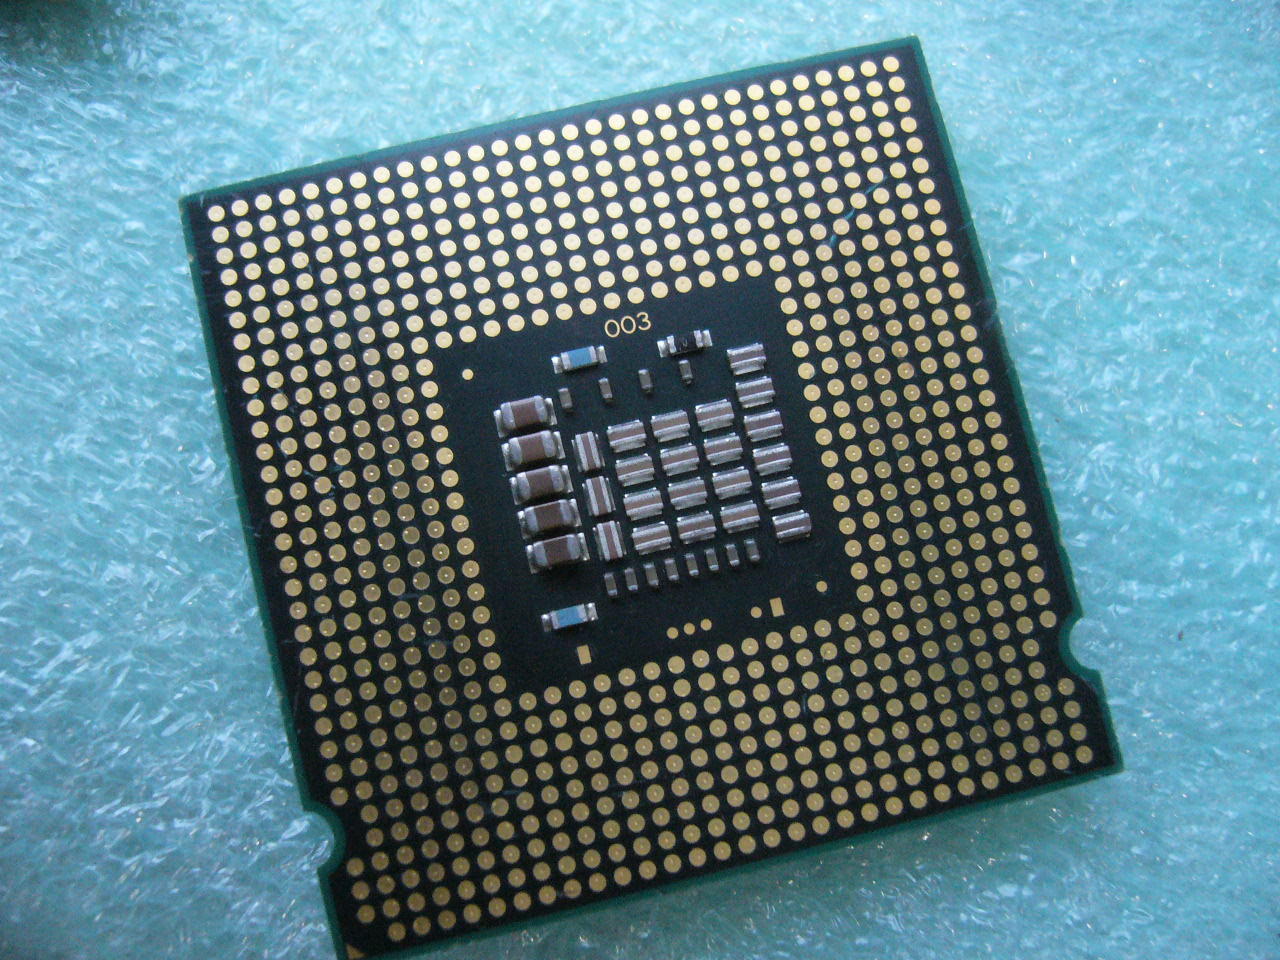 QTY 1x INTEL Core 2 Duo E8200 CPU 2.66GHz 6MB/1333Mhz LGA775 SLAPP - zum Schließen ins Bild klicken